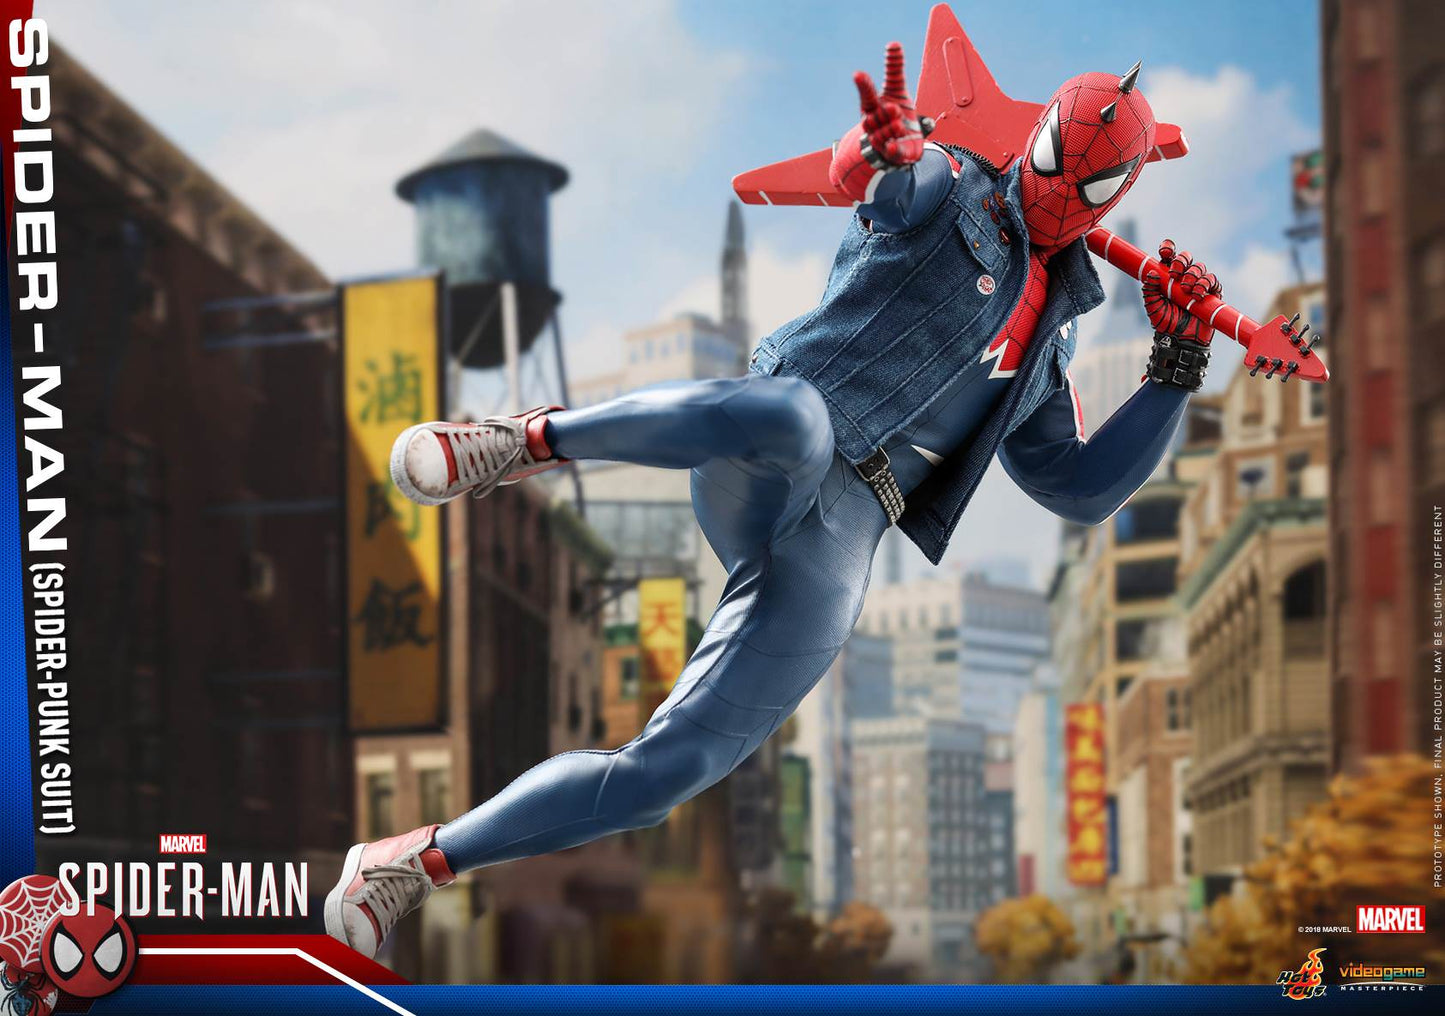 Spider-Man Spider-Punk Suit 1/6 - Marvel's Spider-Man Hot Toys